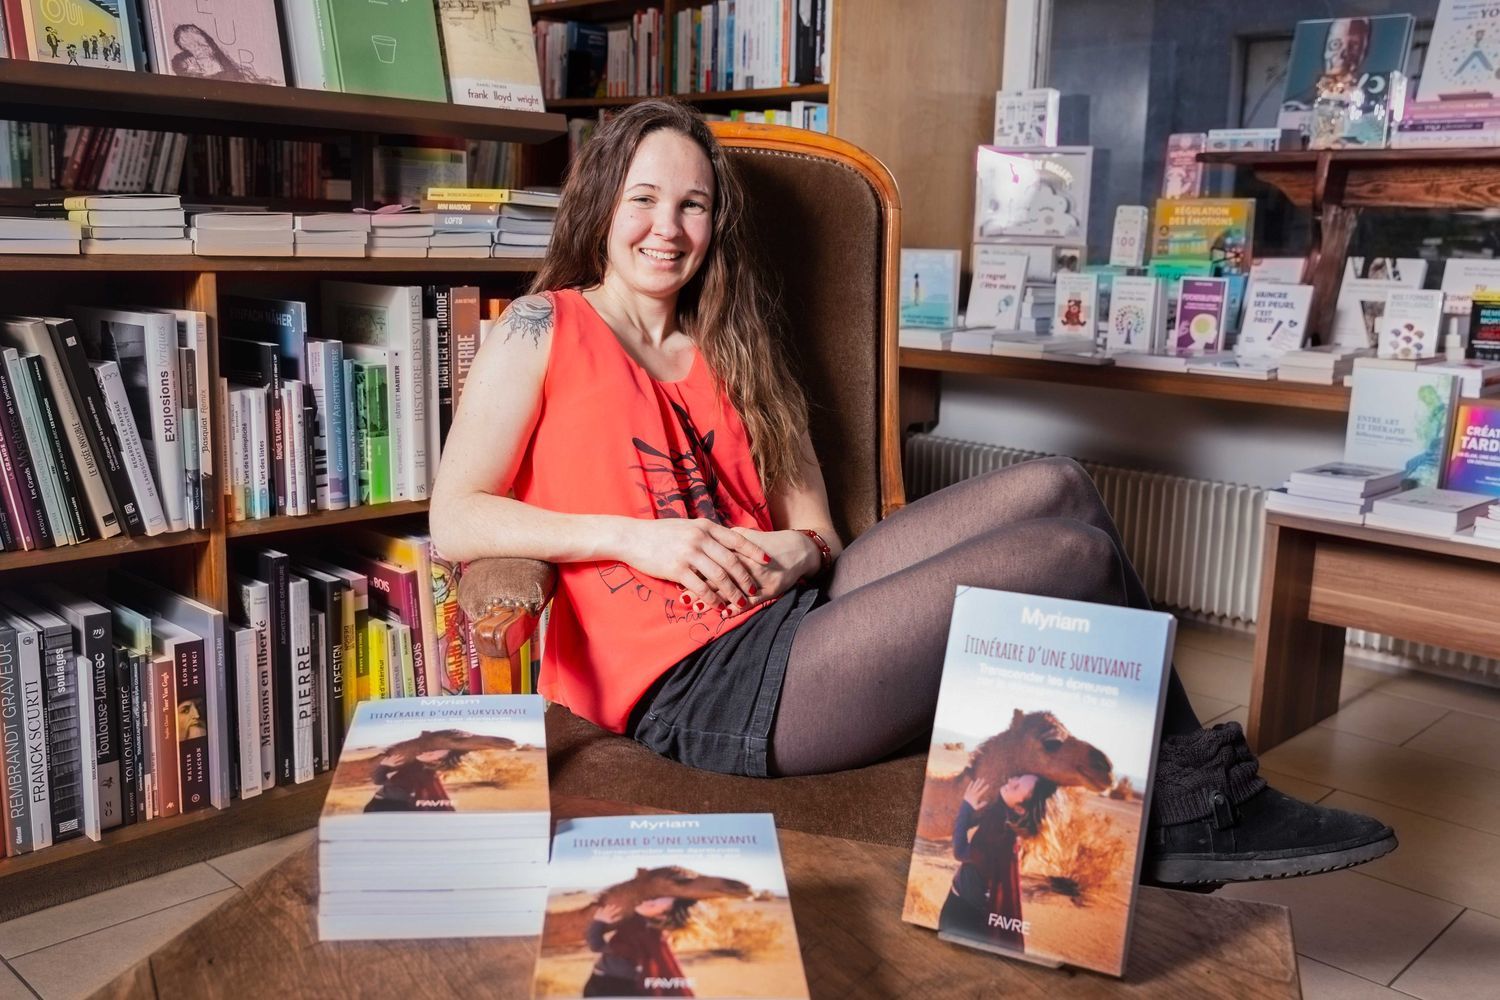 Myriam Duc a dédicacé son ouvrage "Itinéraire d'une survivante" à la librairie Des livres et Moi à Martigny.